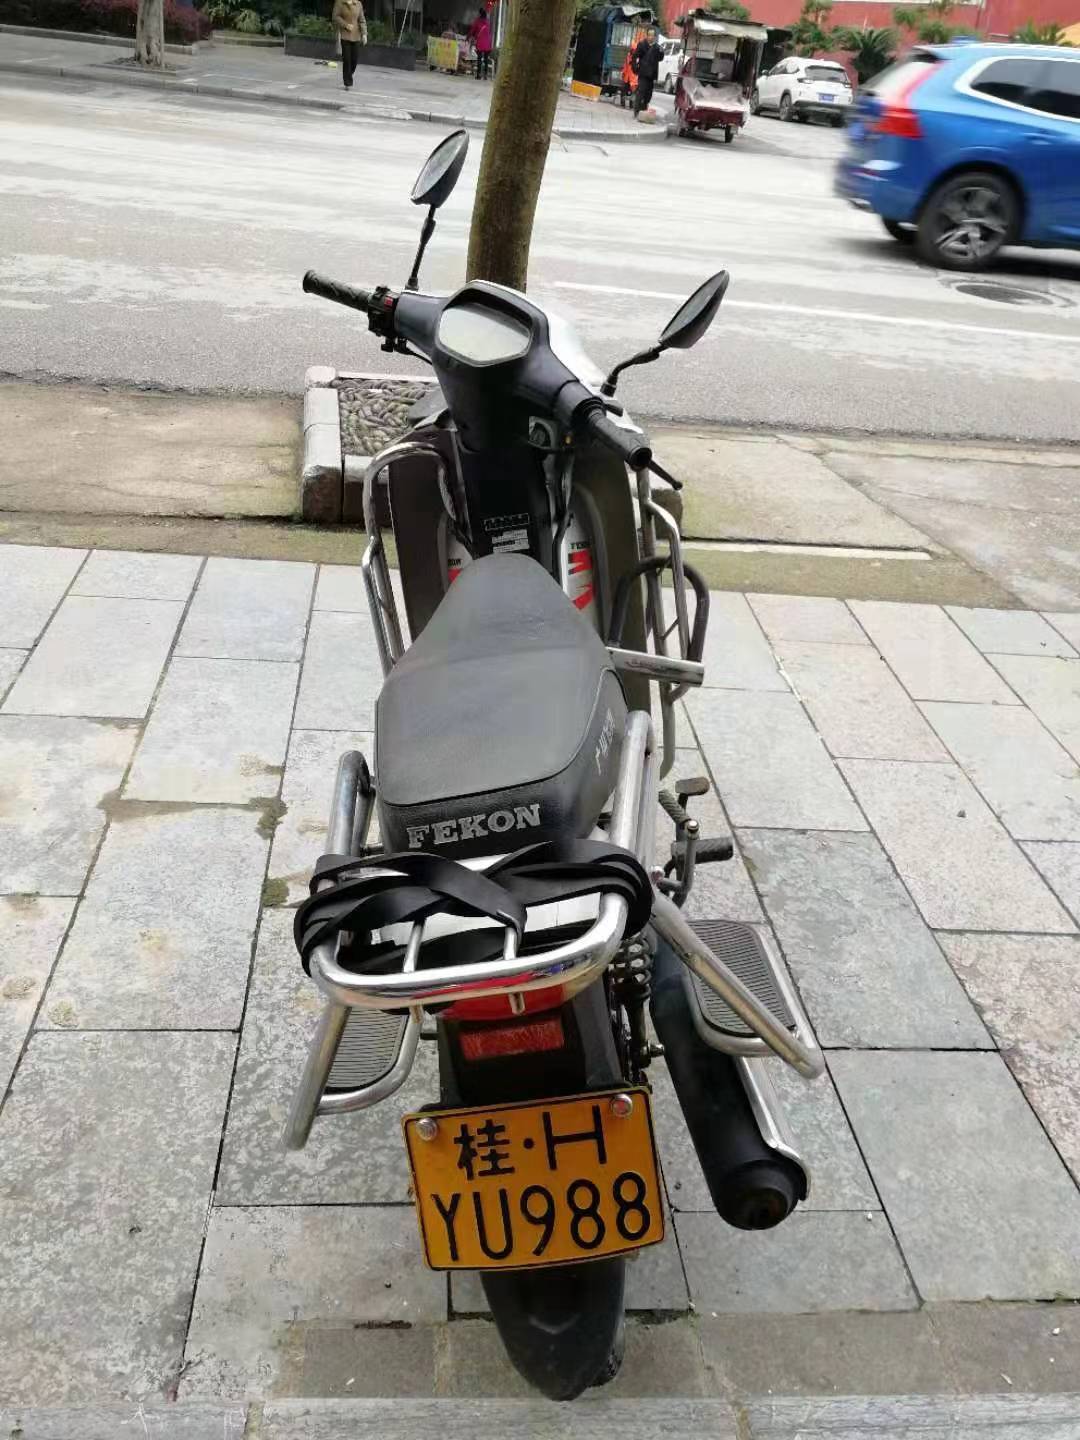 奇怪！这辆摩托车丢在恭城路边几个月都没人要？究竟是谁的车？357 / 作者:thkfh / 帖子ID:267627